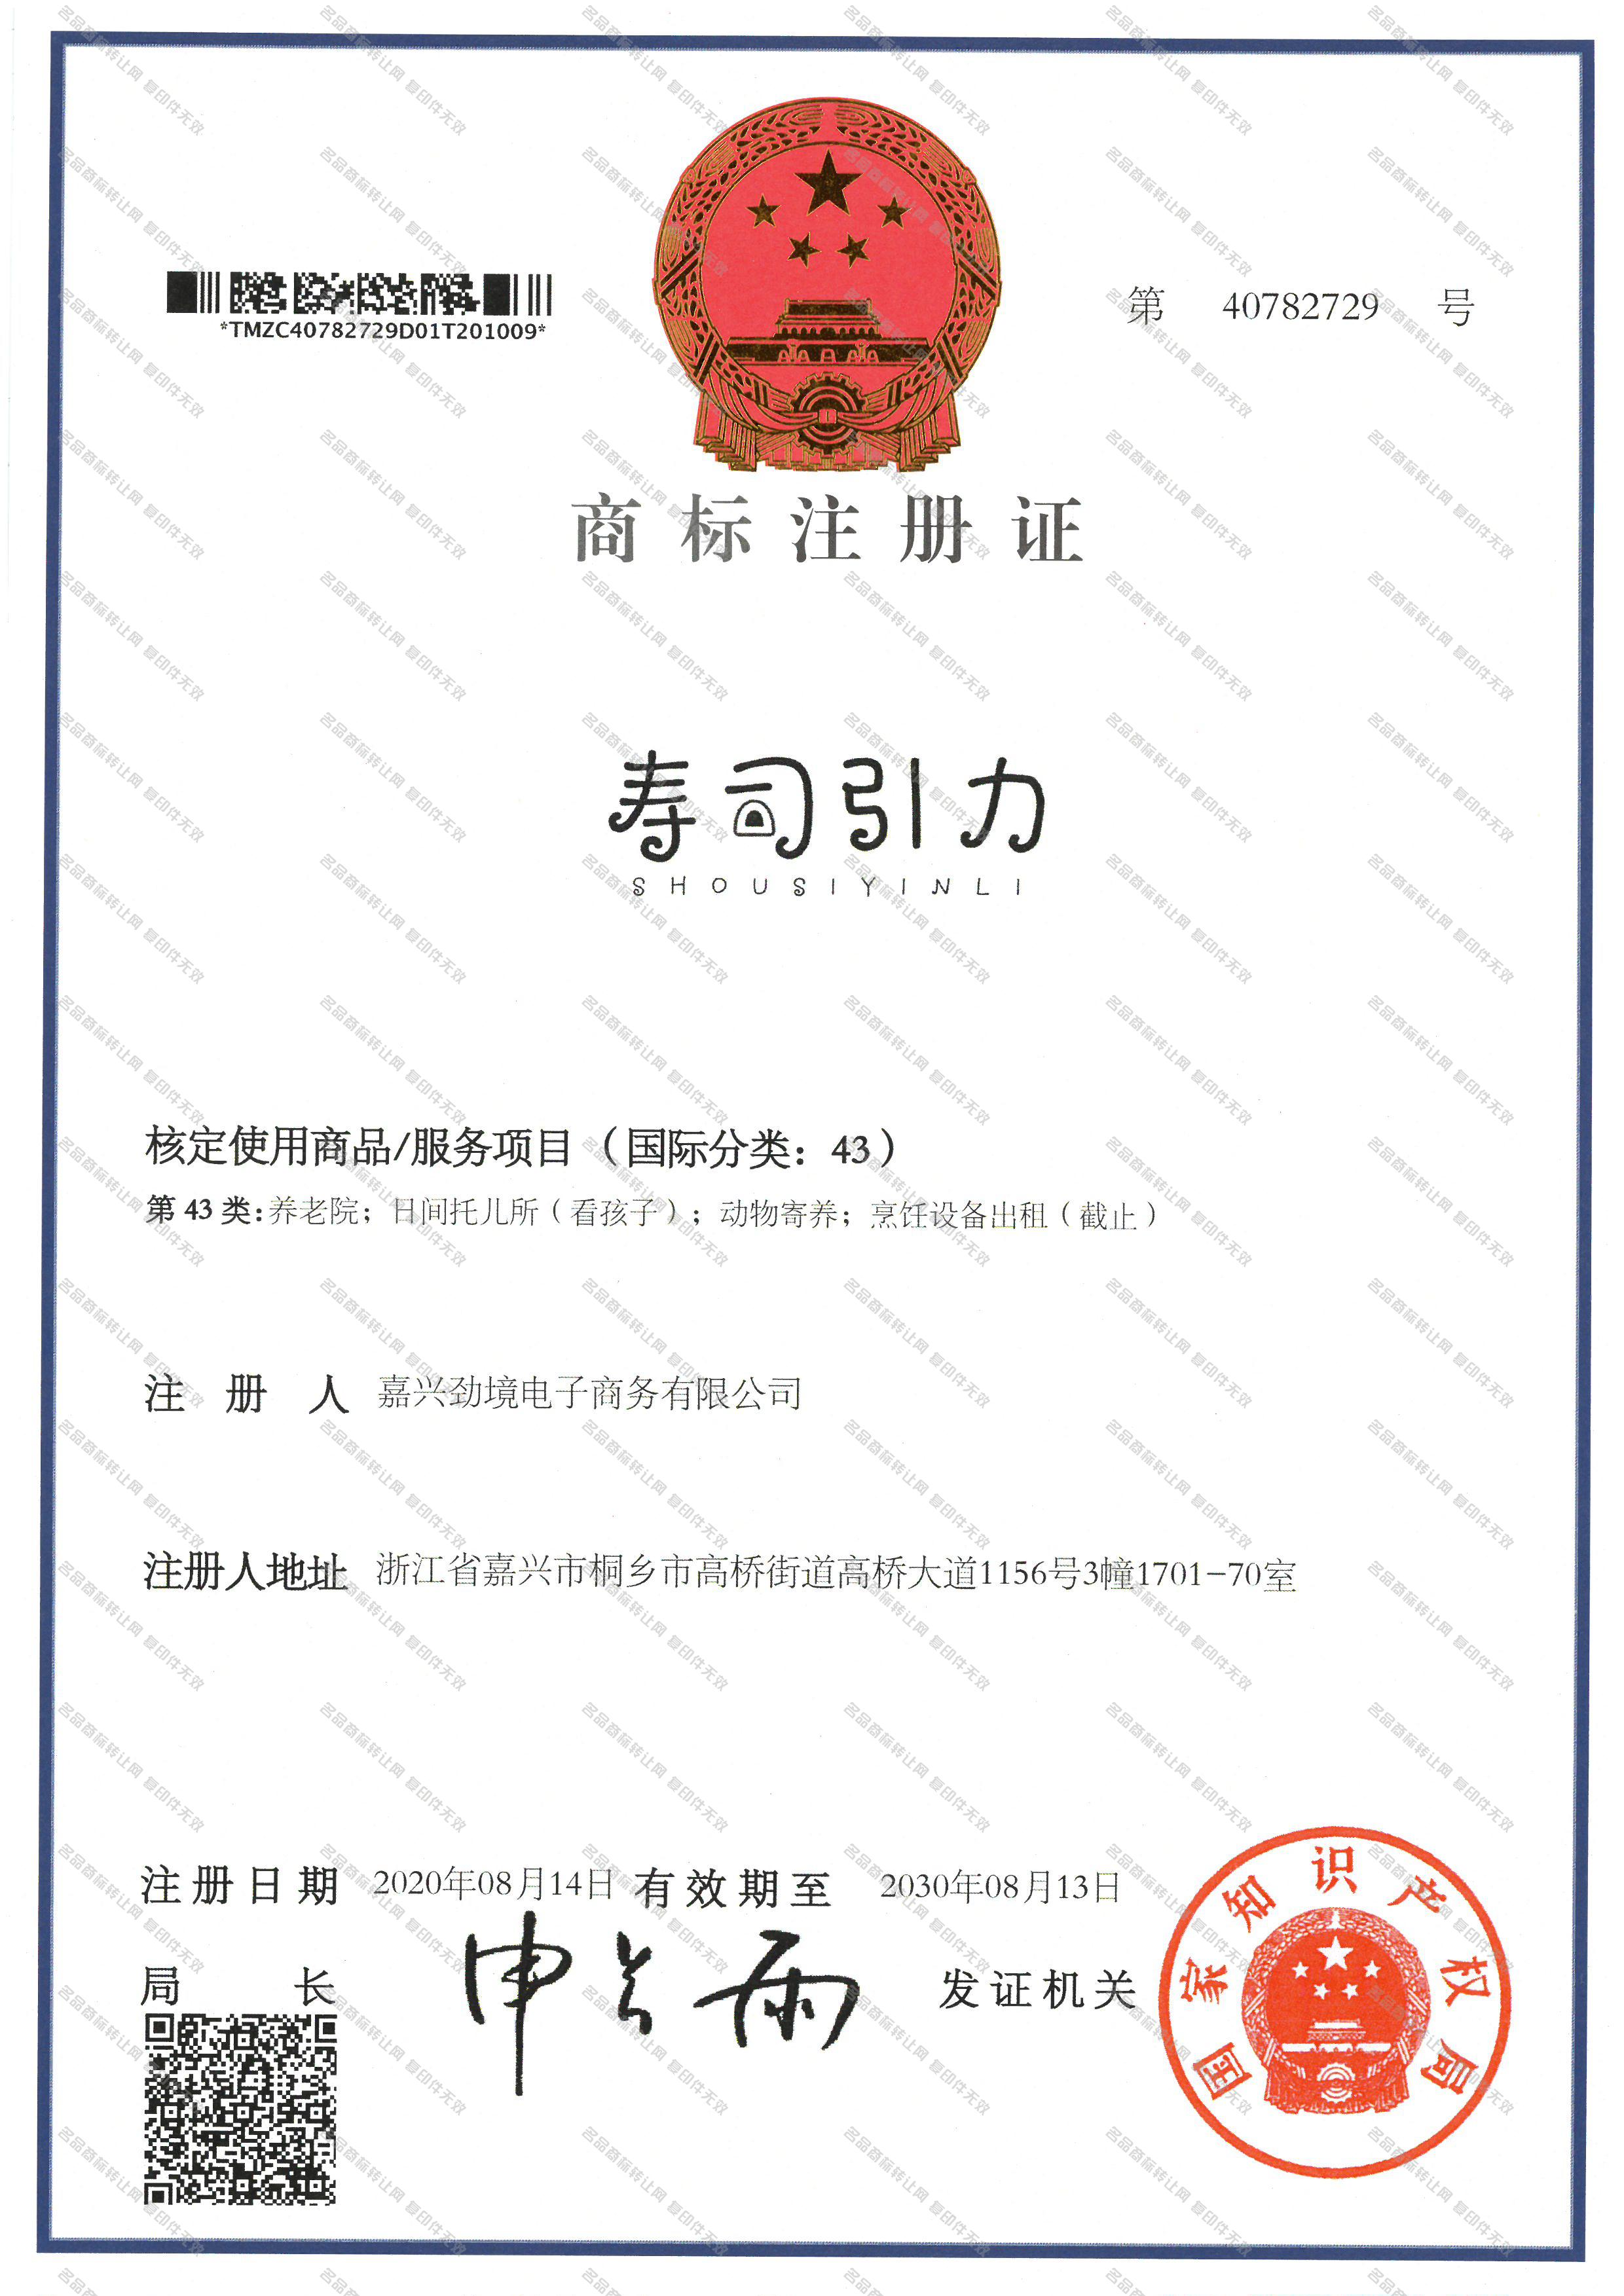 寿司引力;SHOUSIYINLI注册证